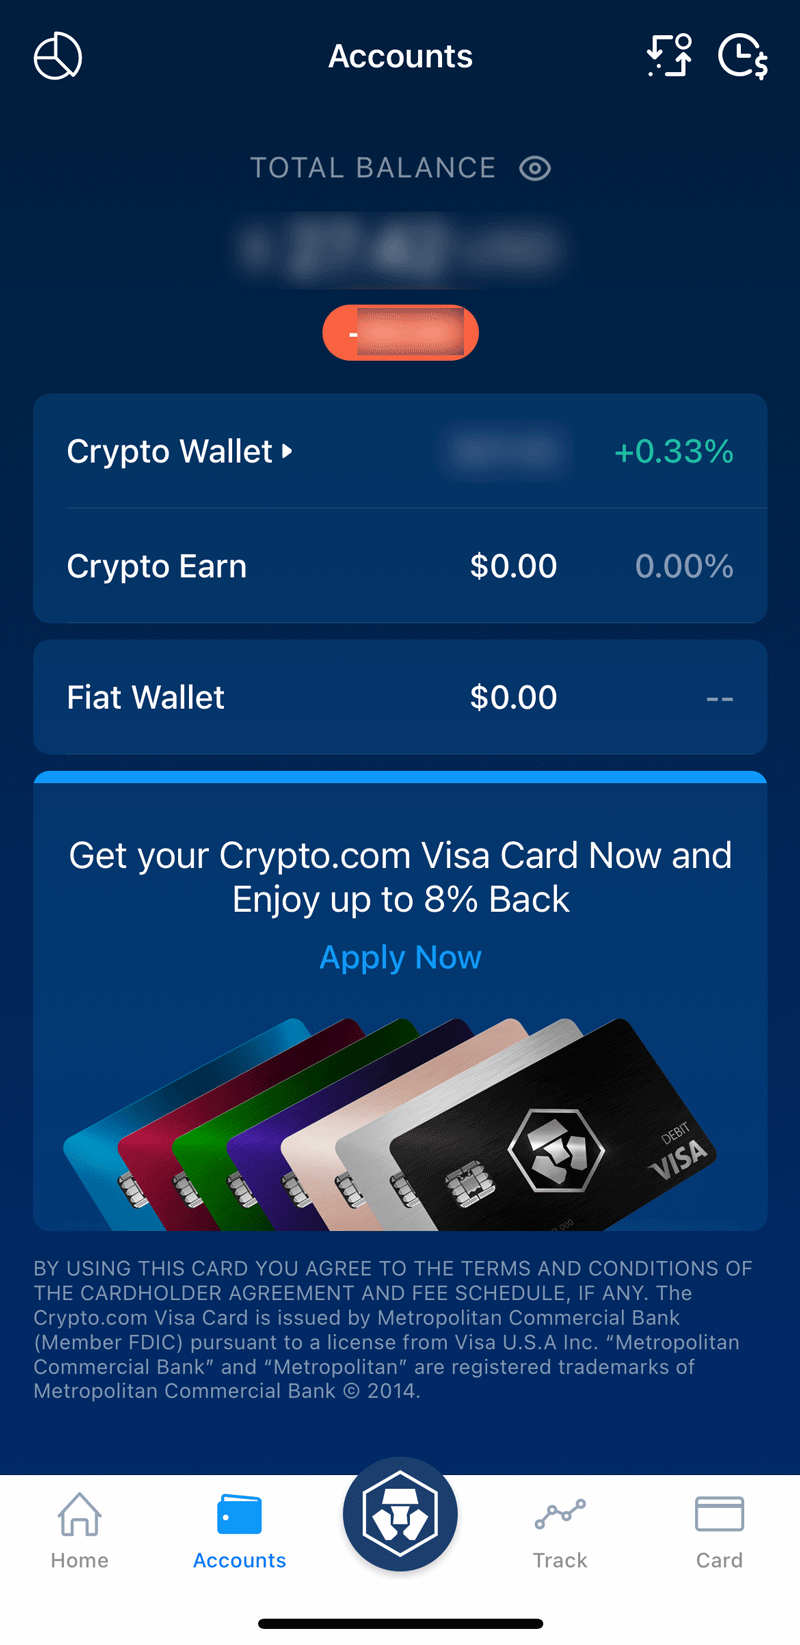 Crypto.com Accounts Overview